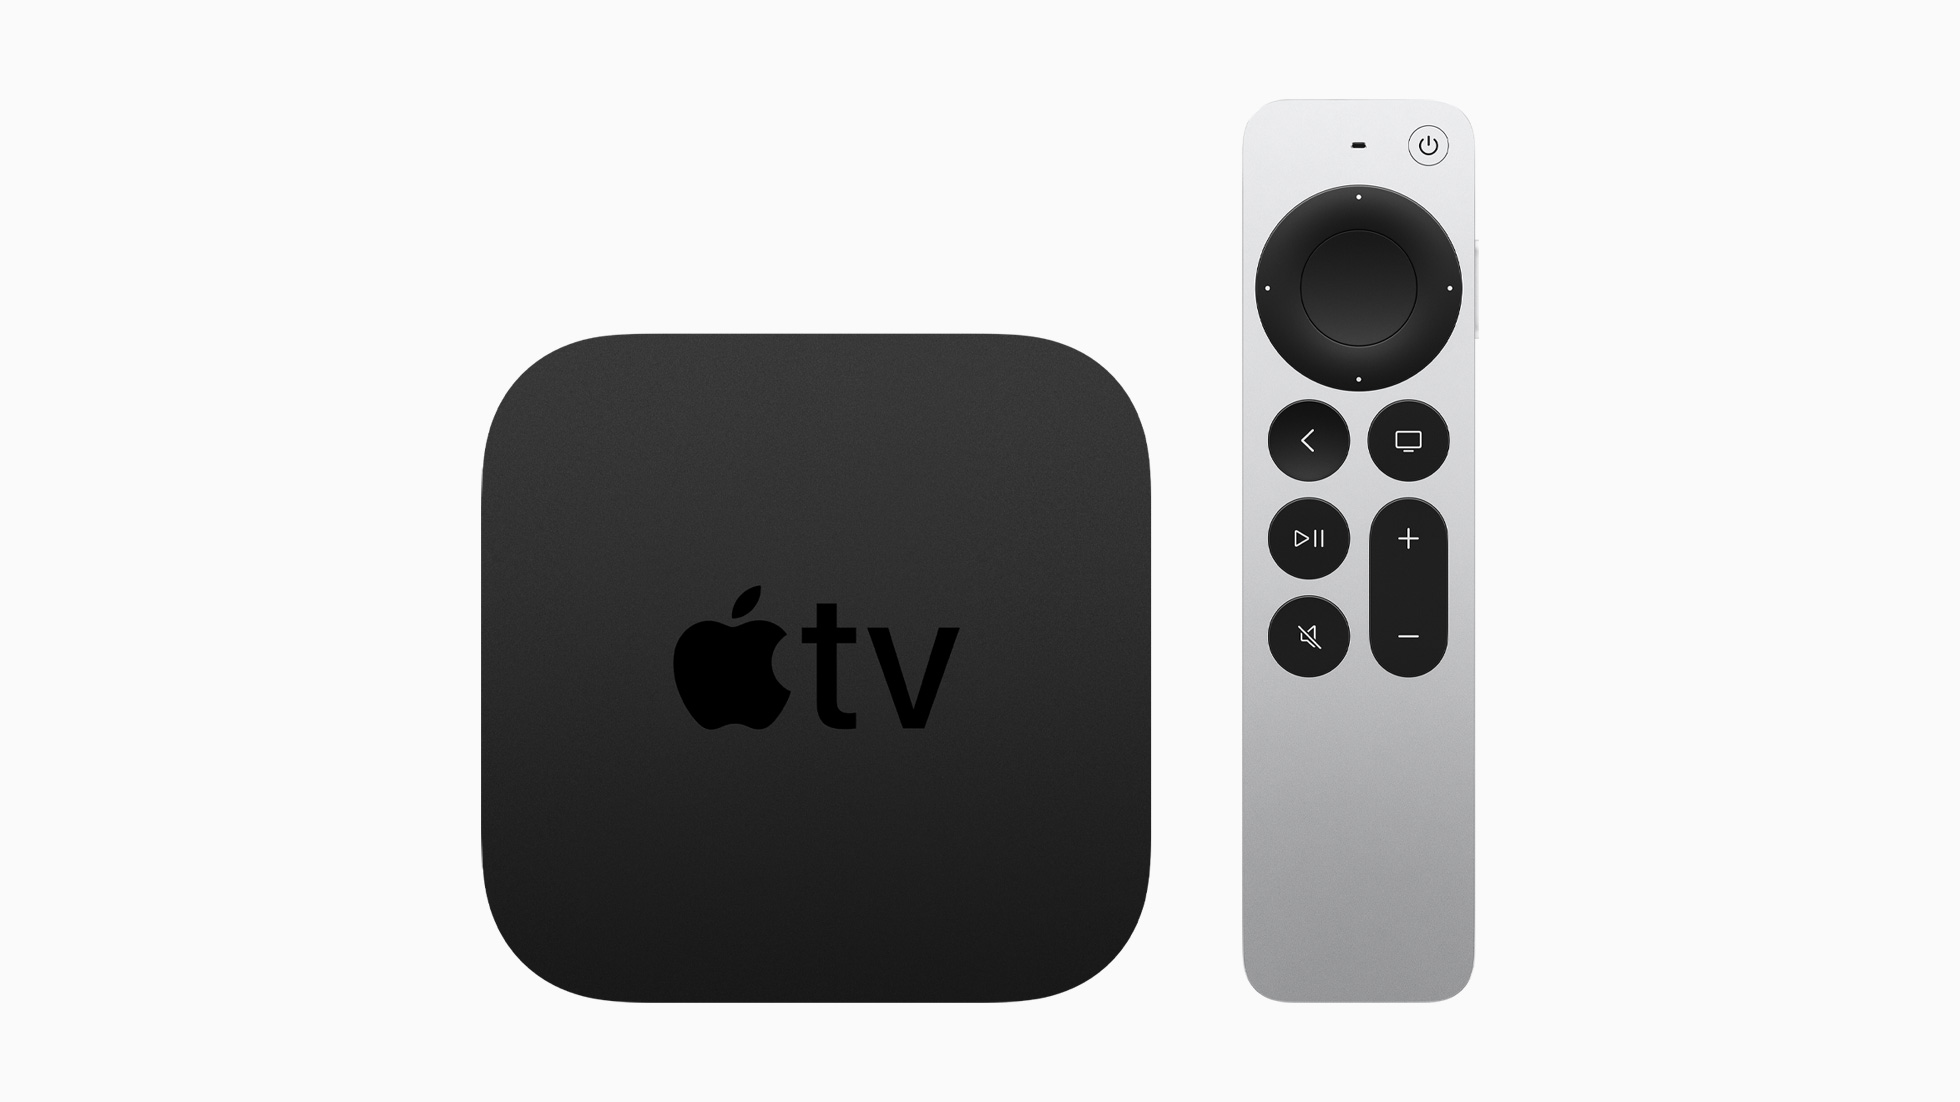 Homepodでゲーム機等の音を鳴らす方法 要apple Tv 4k 第二世代 とhdmi Arc対応テレビ Engadget 日本版